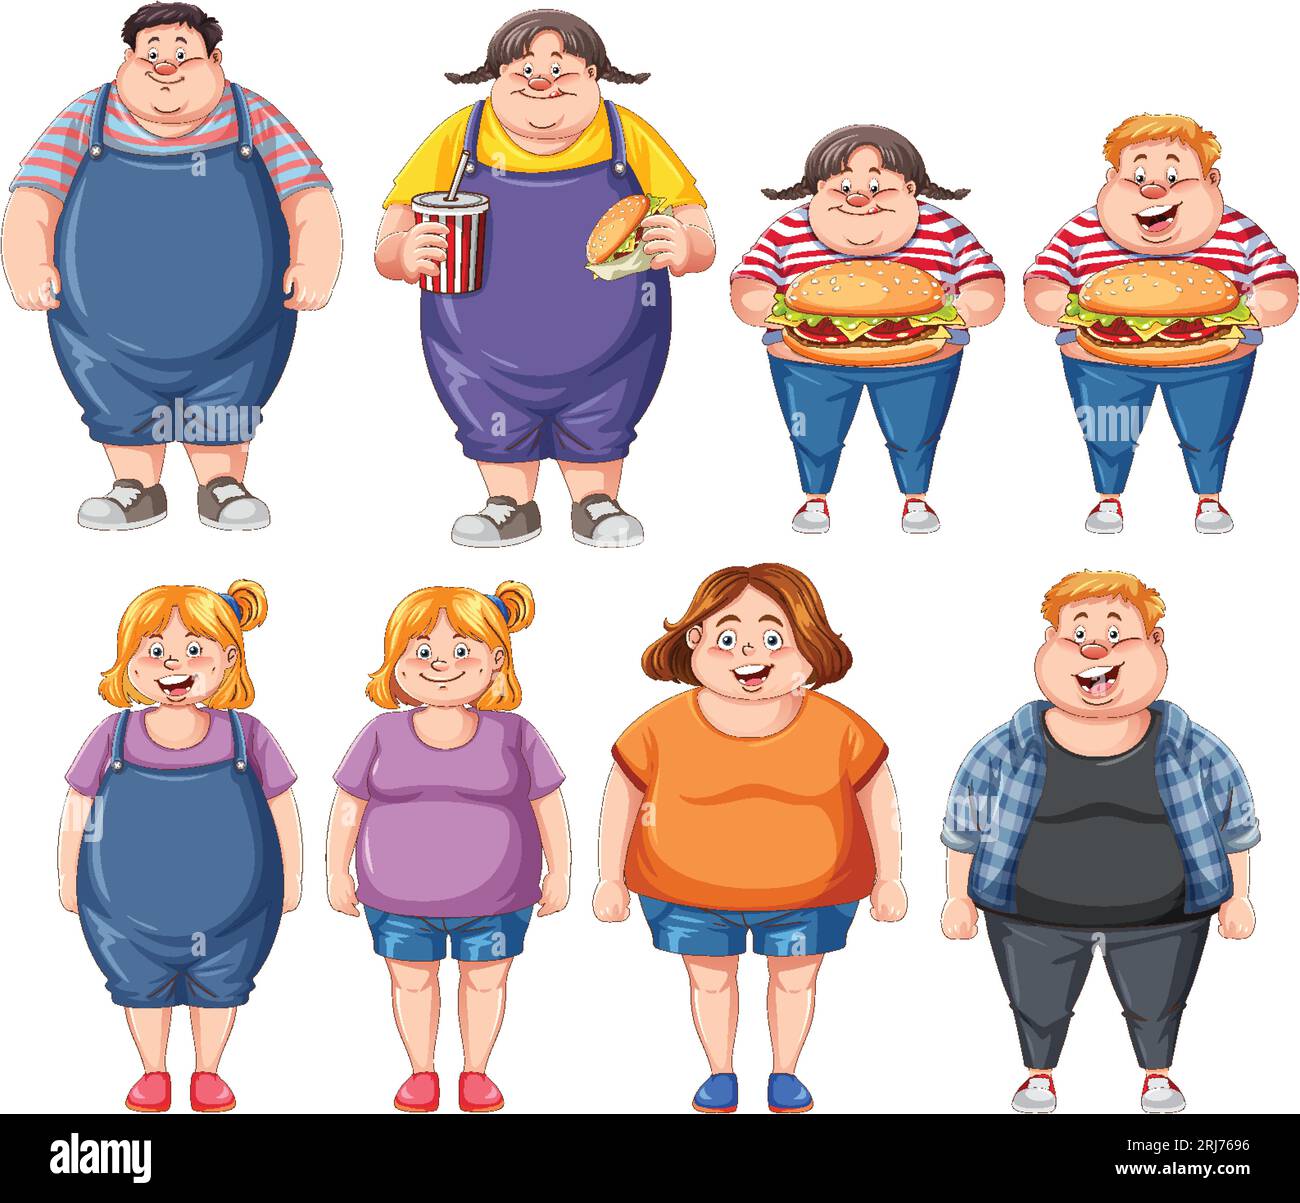 Un groupe d'hommes et de femmes représentés comme des personnages de dessins animés, s'engageant dans des habitudes alimentaires malsaines Illustration de Vecteur